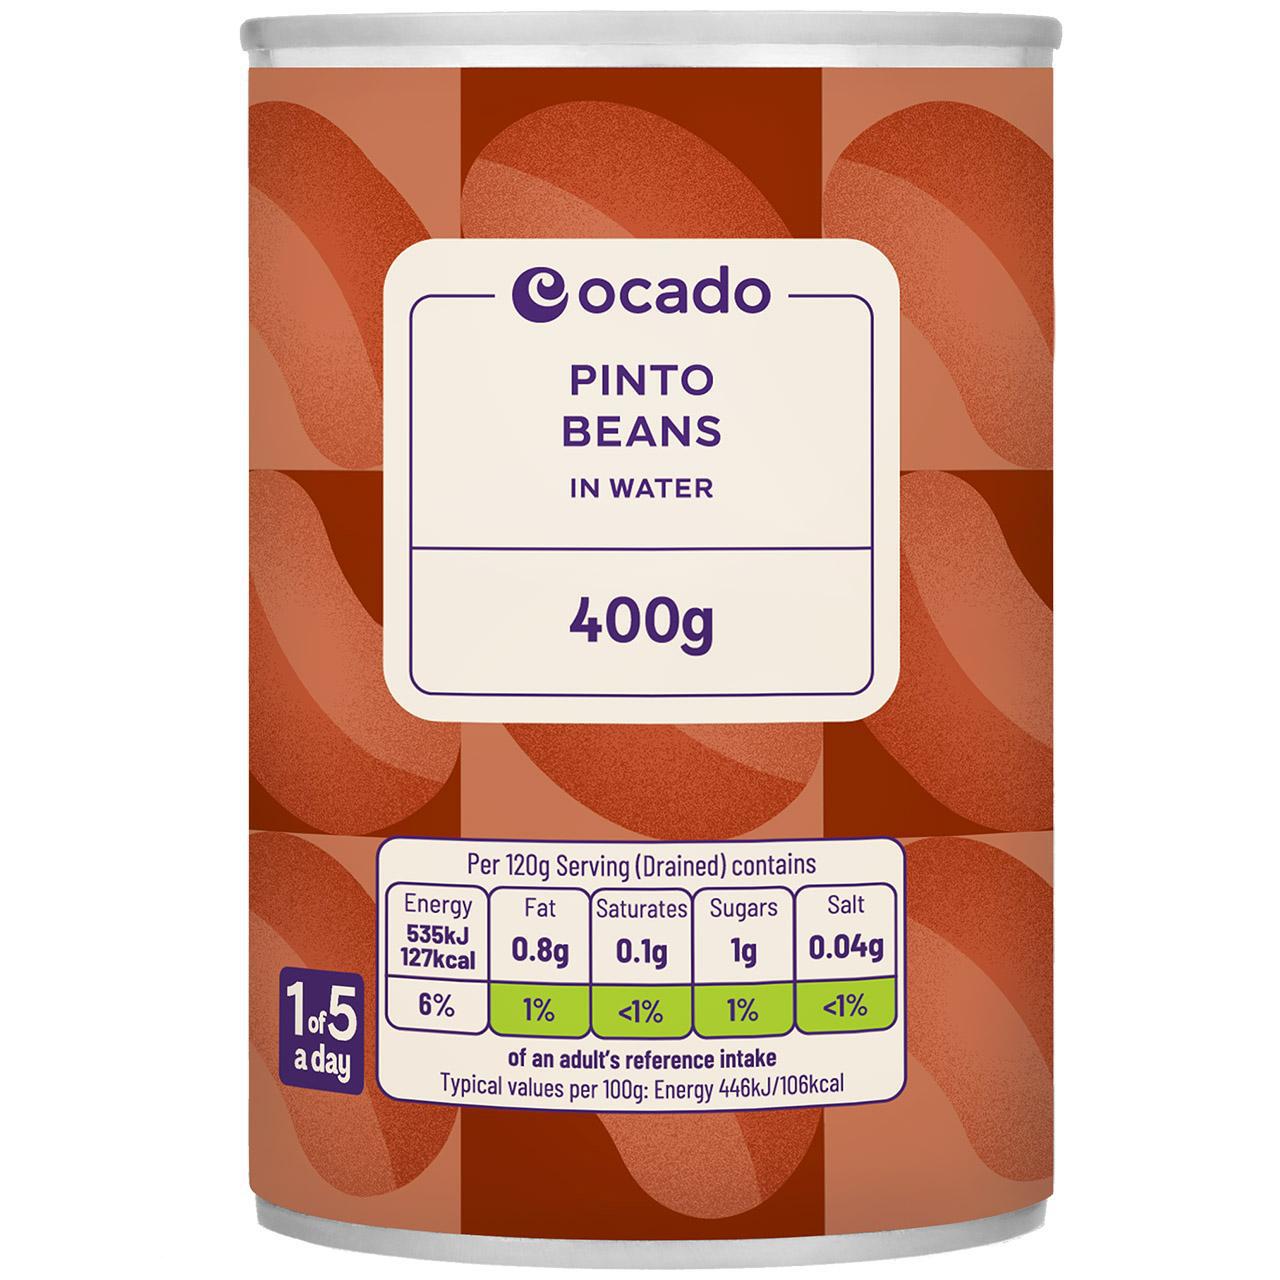 Ocado Pinto Beans in Water 400g